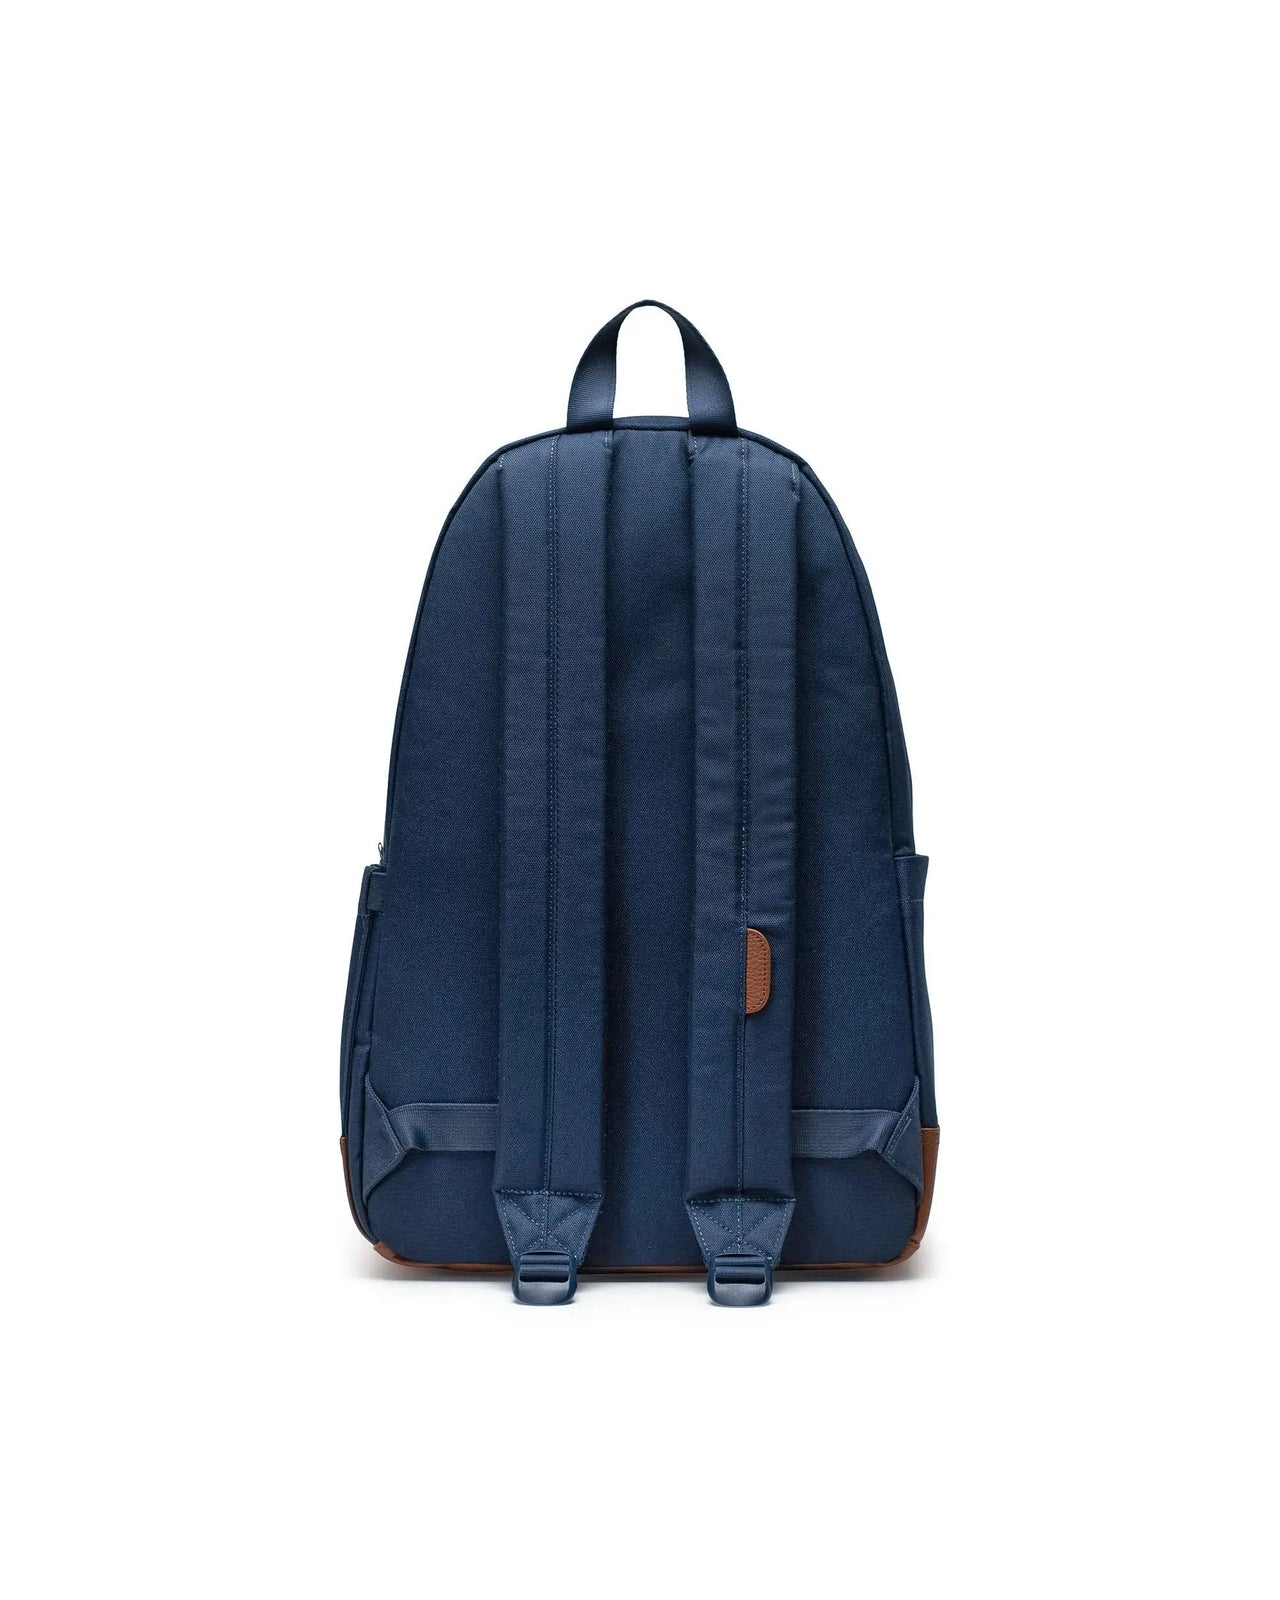 Herschel Heritage™ Backpack Navy/Tan OS